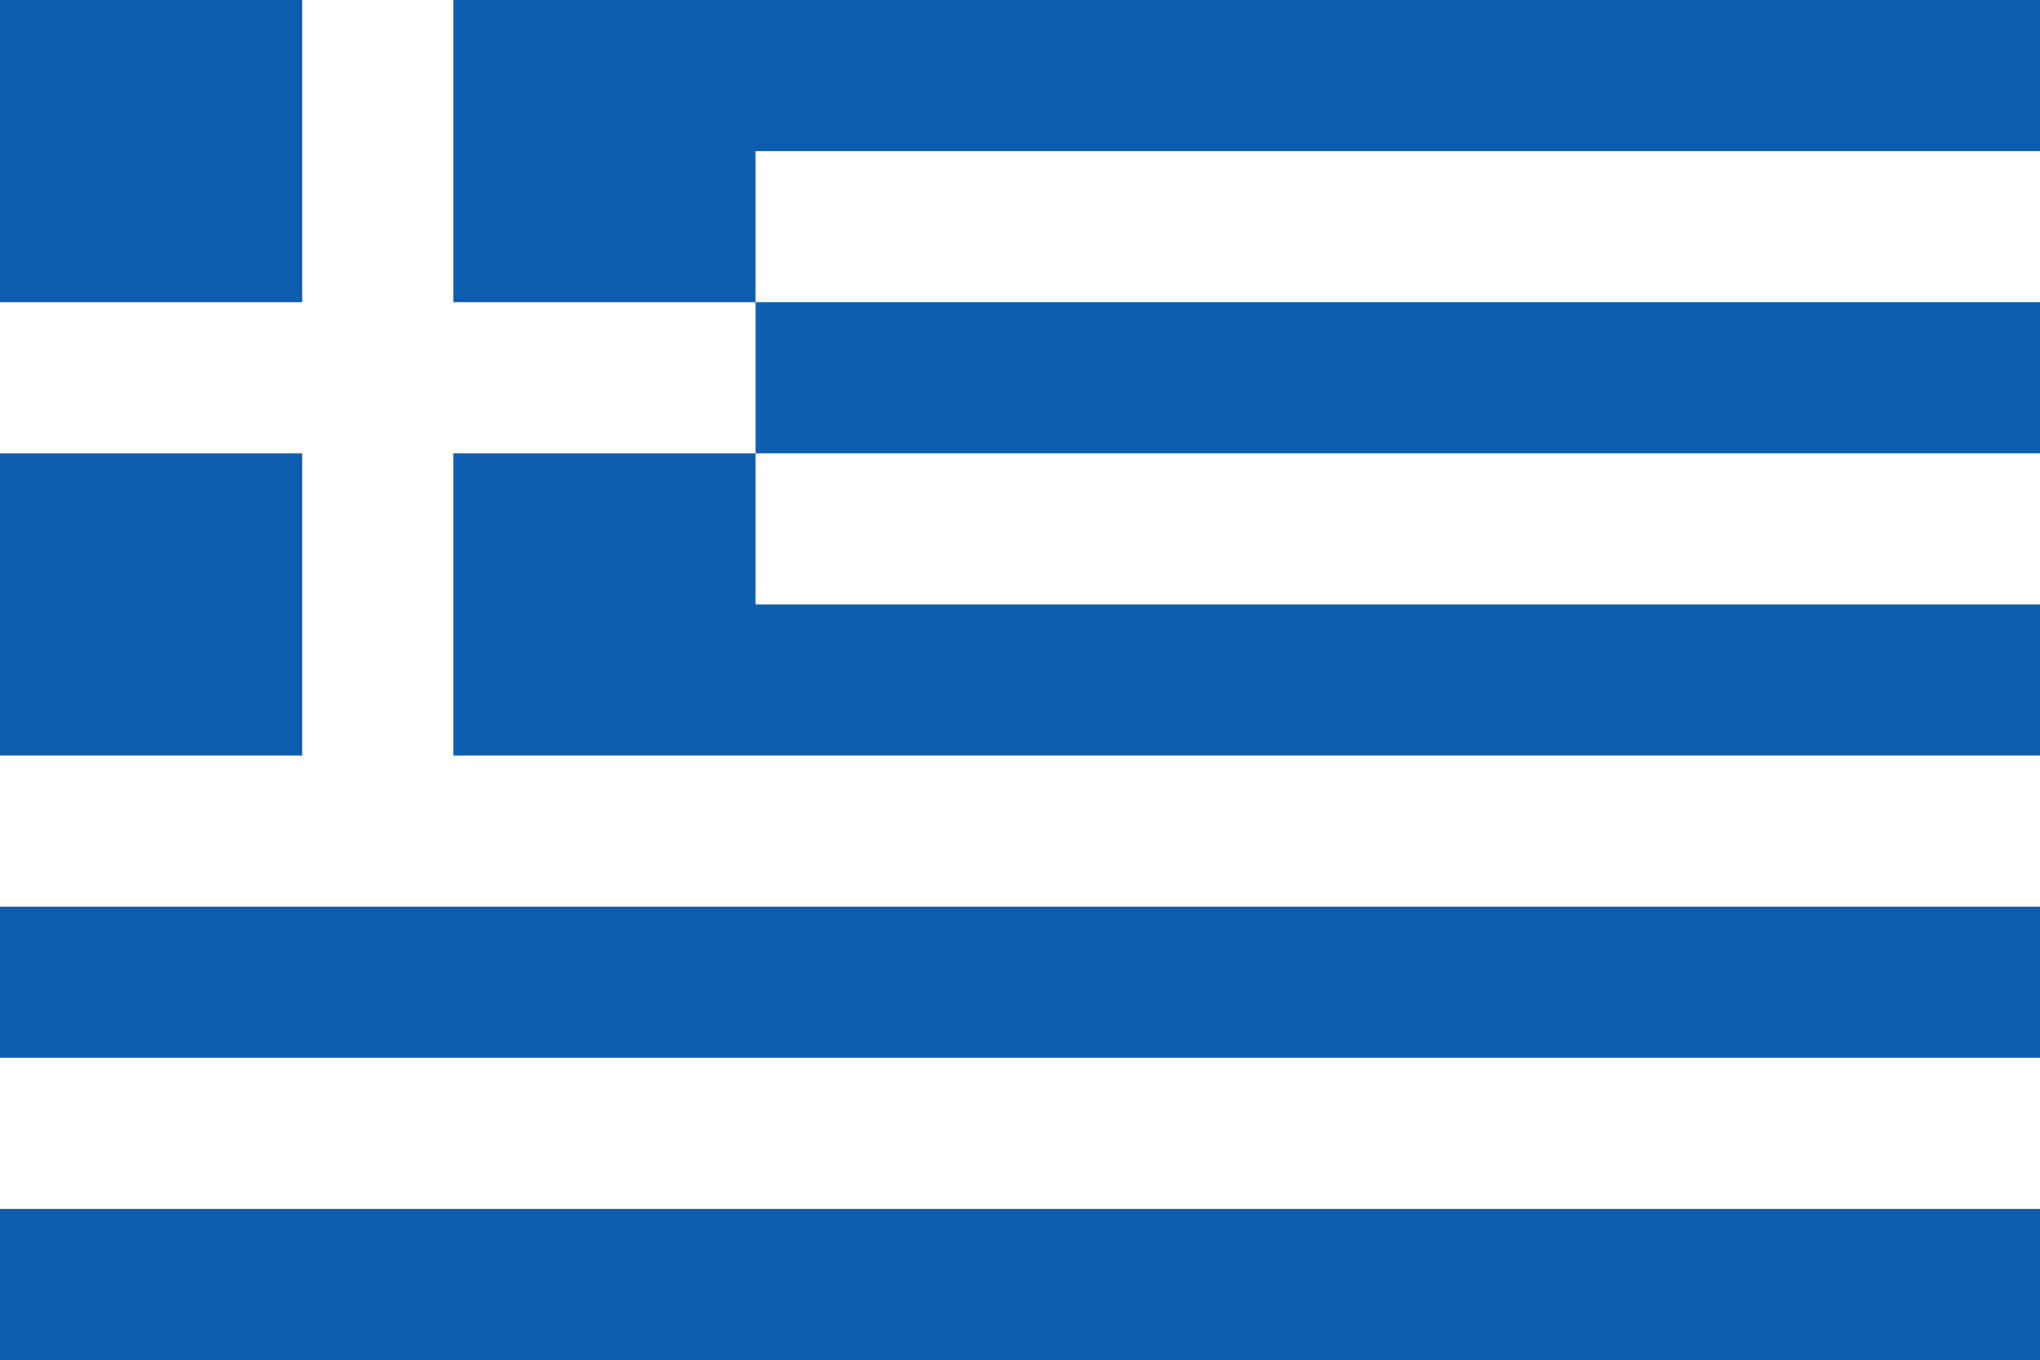 Bild der Staatsflagge Griechenland - mit einer Auflösung von 2040x1360 - Europa